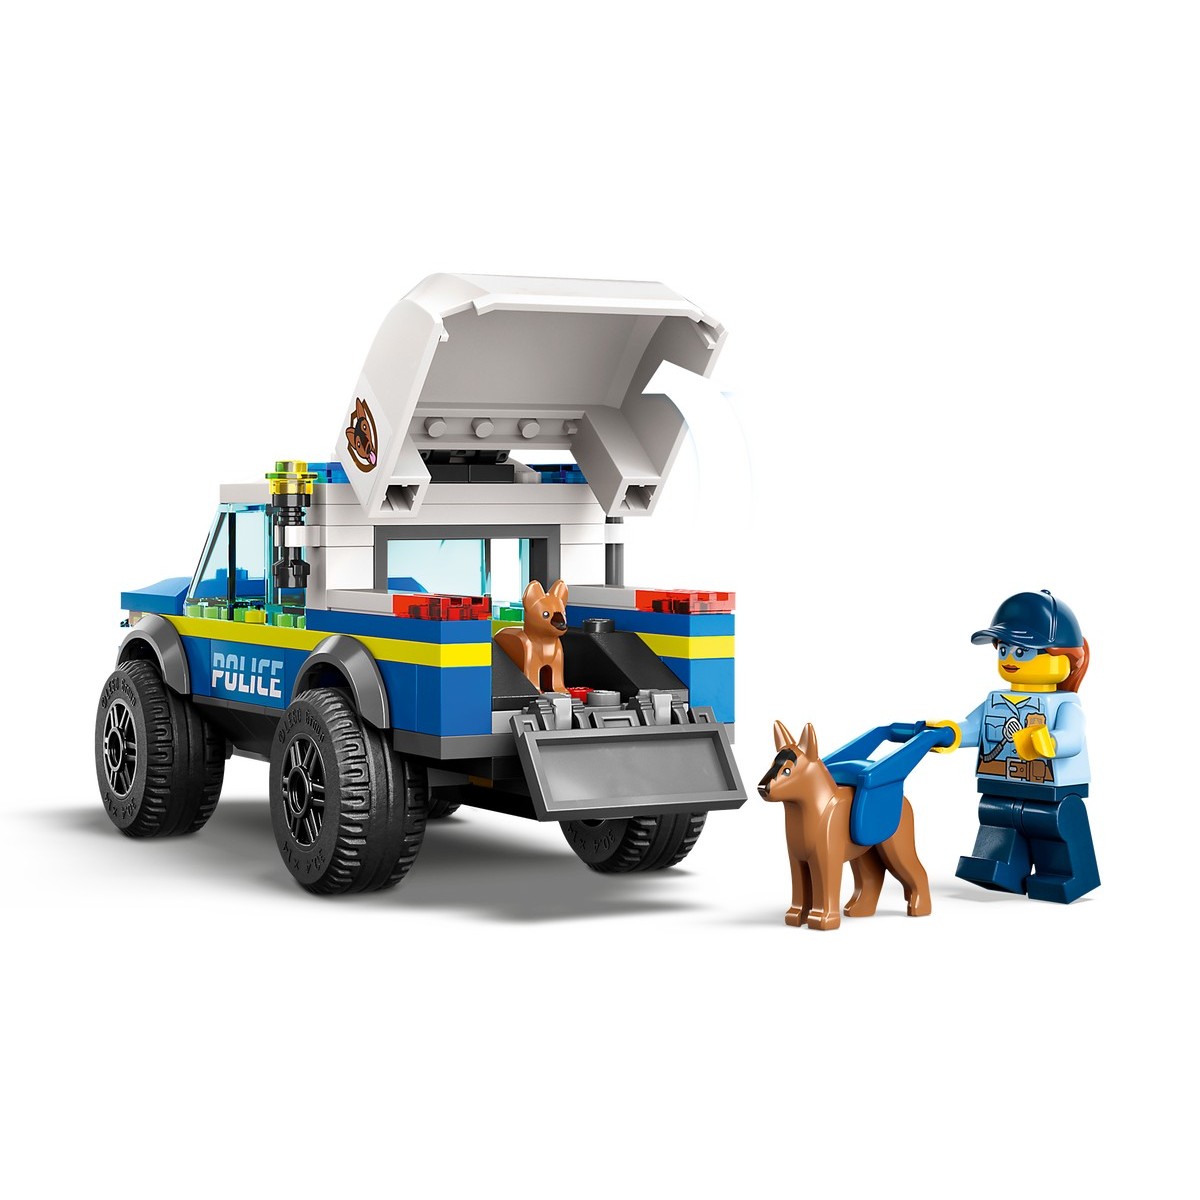 LEGO CITY MOBILNE CVICISKO PRE POLICAJNE PSY /60369/